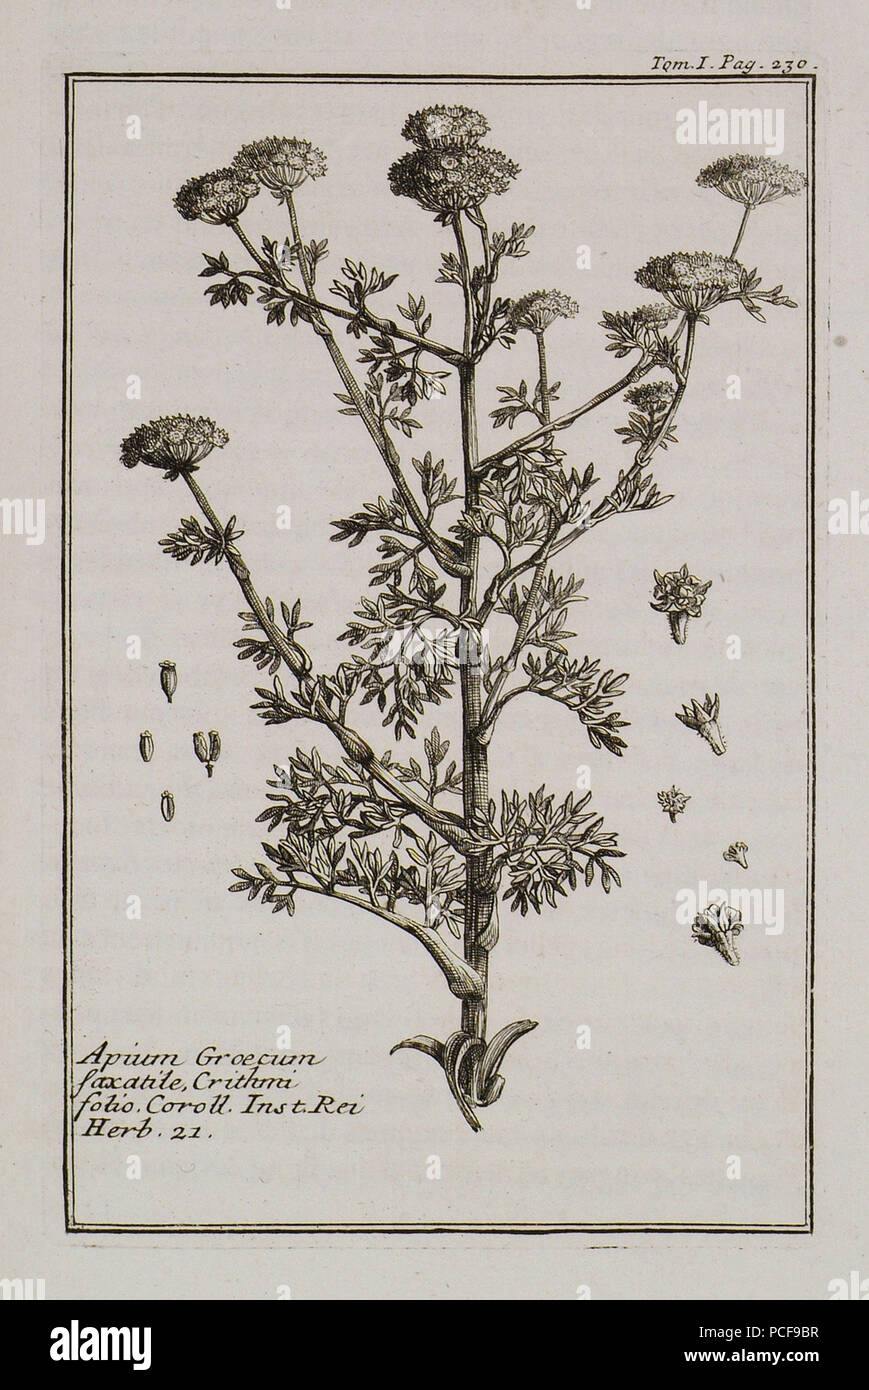 53 Apium Graecum saxatile, Crithmi folio Coroll Inst Rei herb 21 - Tournefort Joseph Pitton De - 1717 Stock Photo